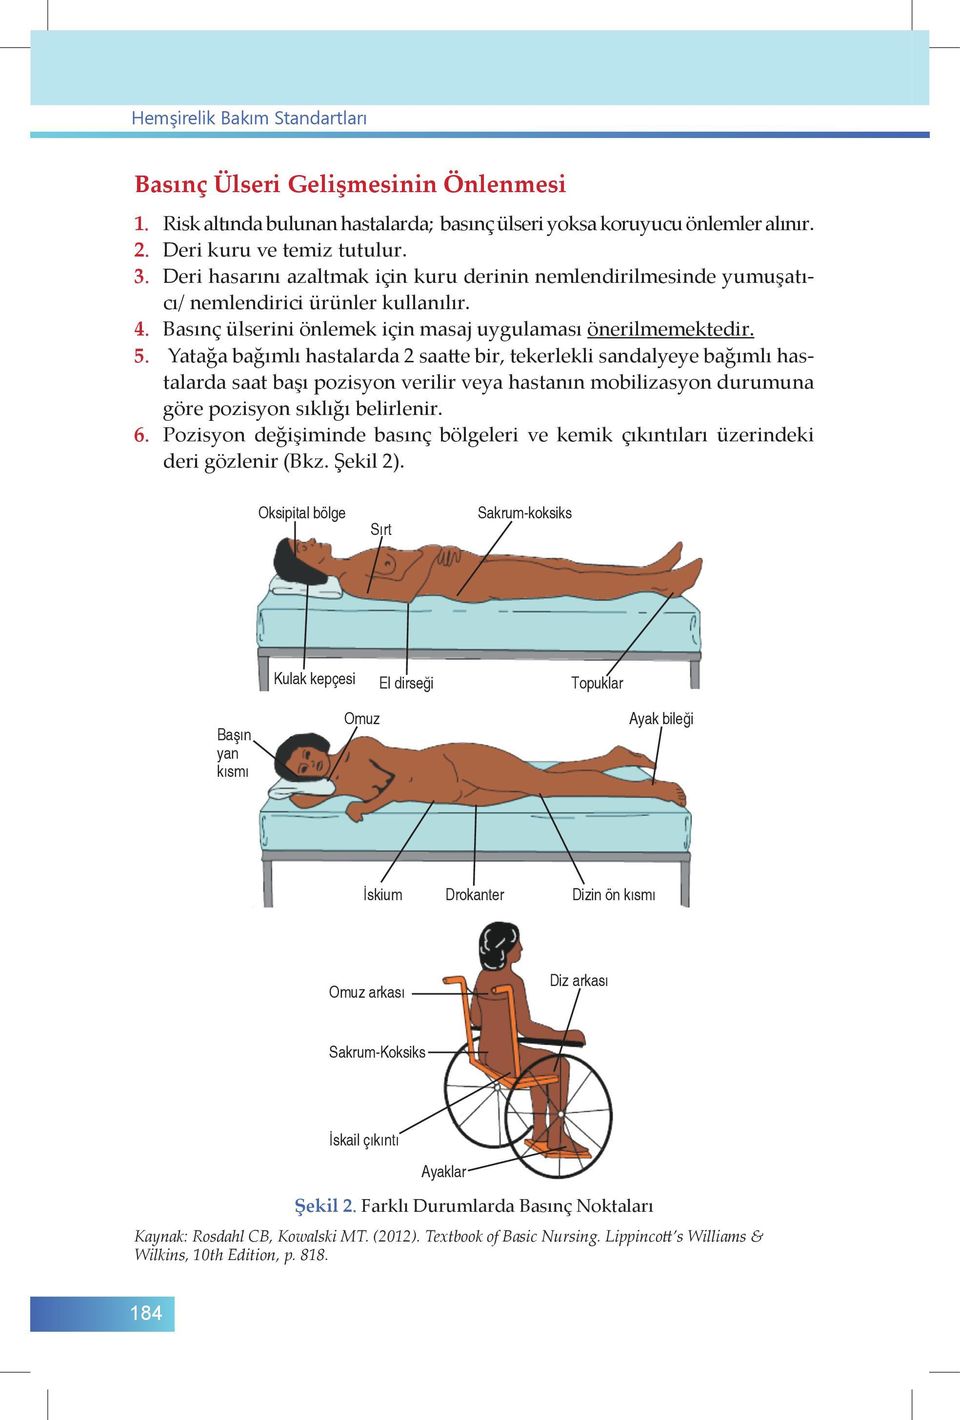 Yatağa bağımlı hastalarda 2 saatte bir, tekerlekli sandalyeye bağımlı hastalarda saat başı pozisyon verilir veya hastanın mobilizasyon durumuna göre pozisyon sıklığı belirlenir. 6.